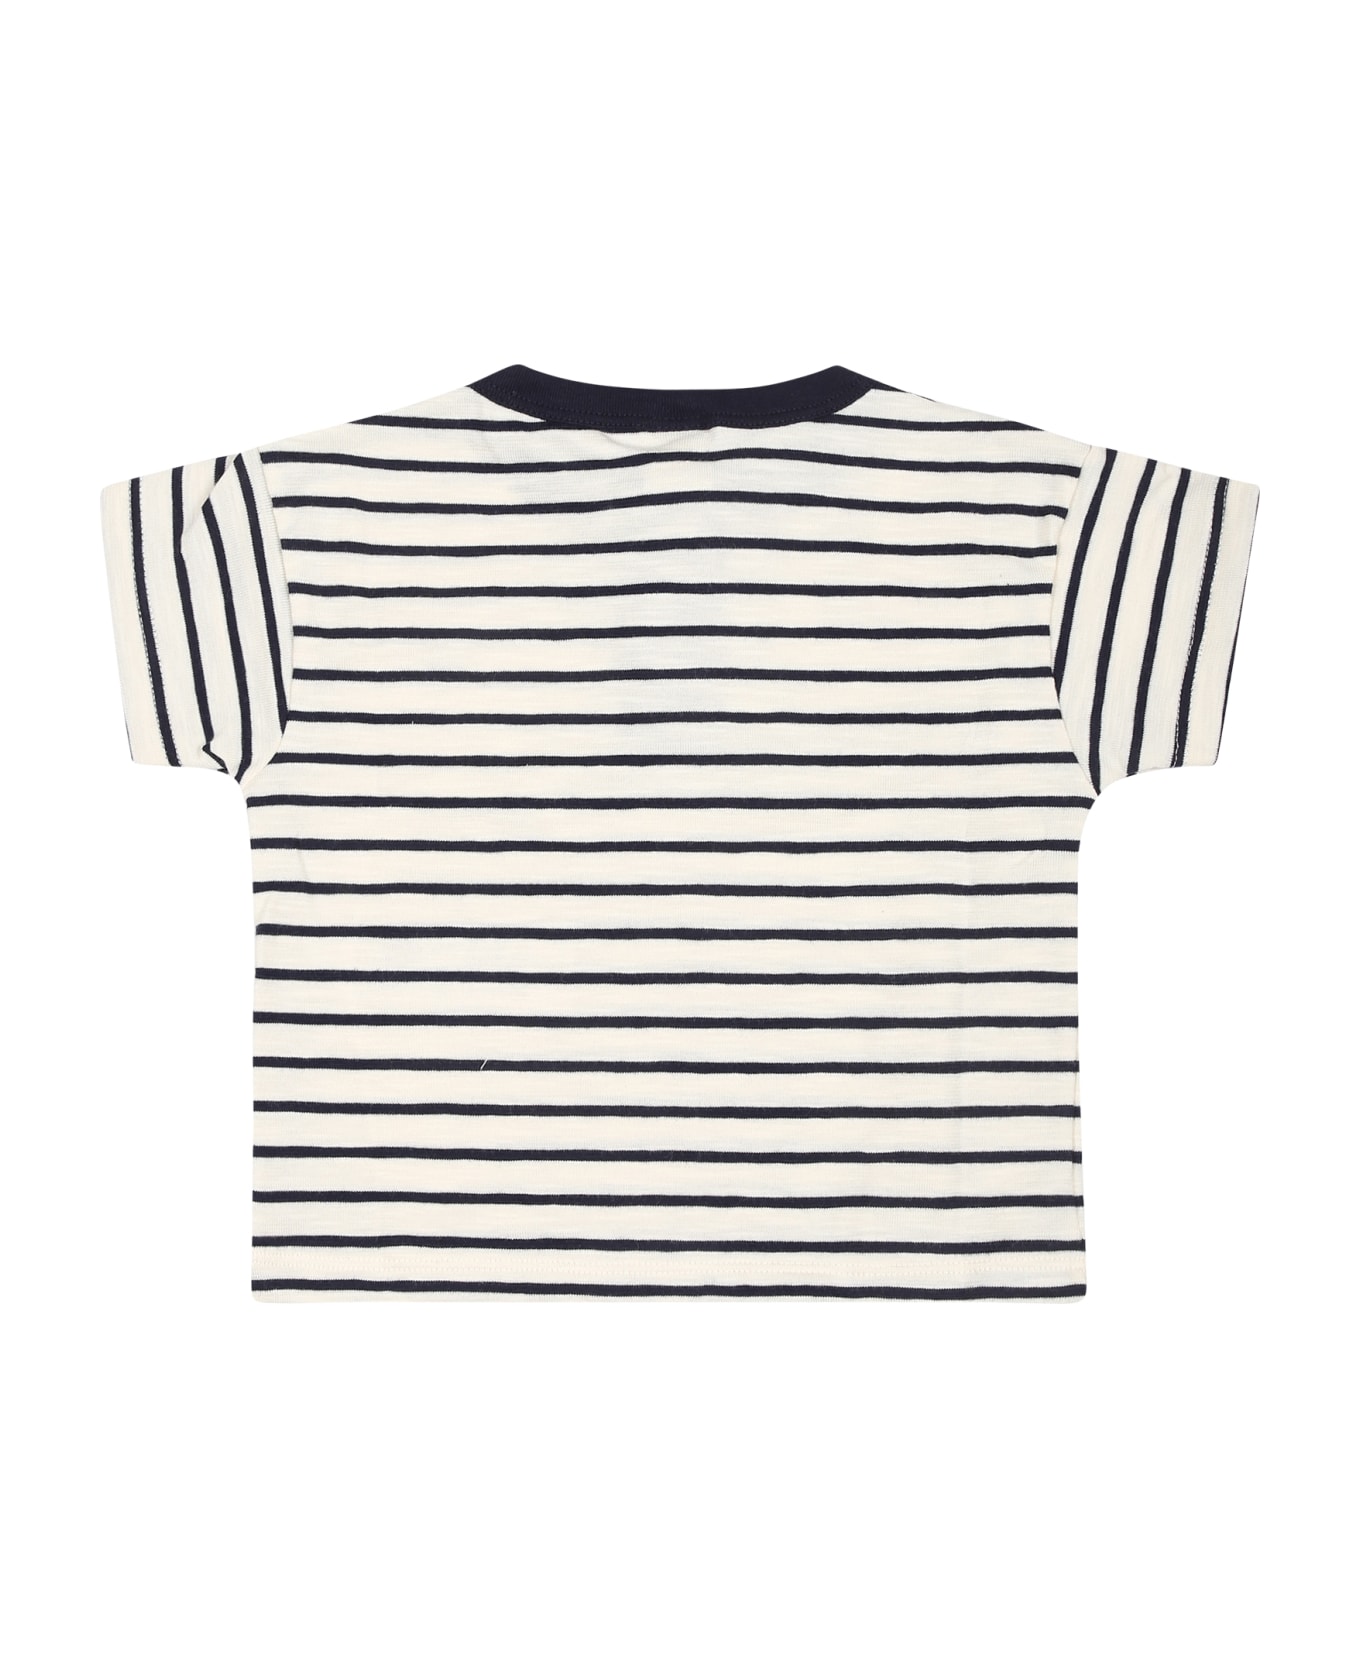 Petit Bateau Ivory T-shirt For Baby Boy With Logo - Ivory